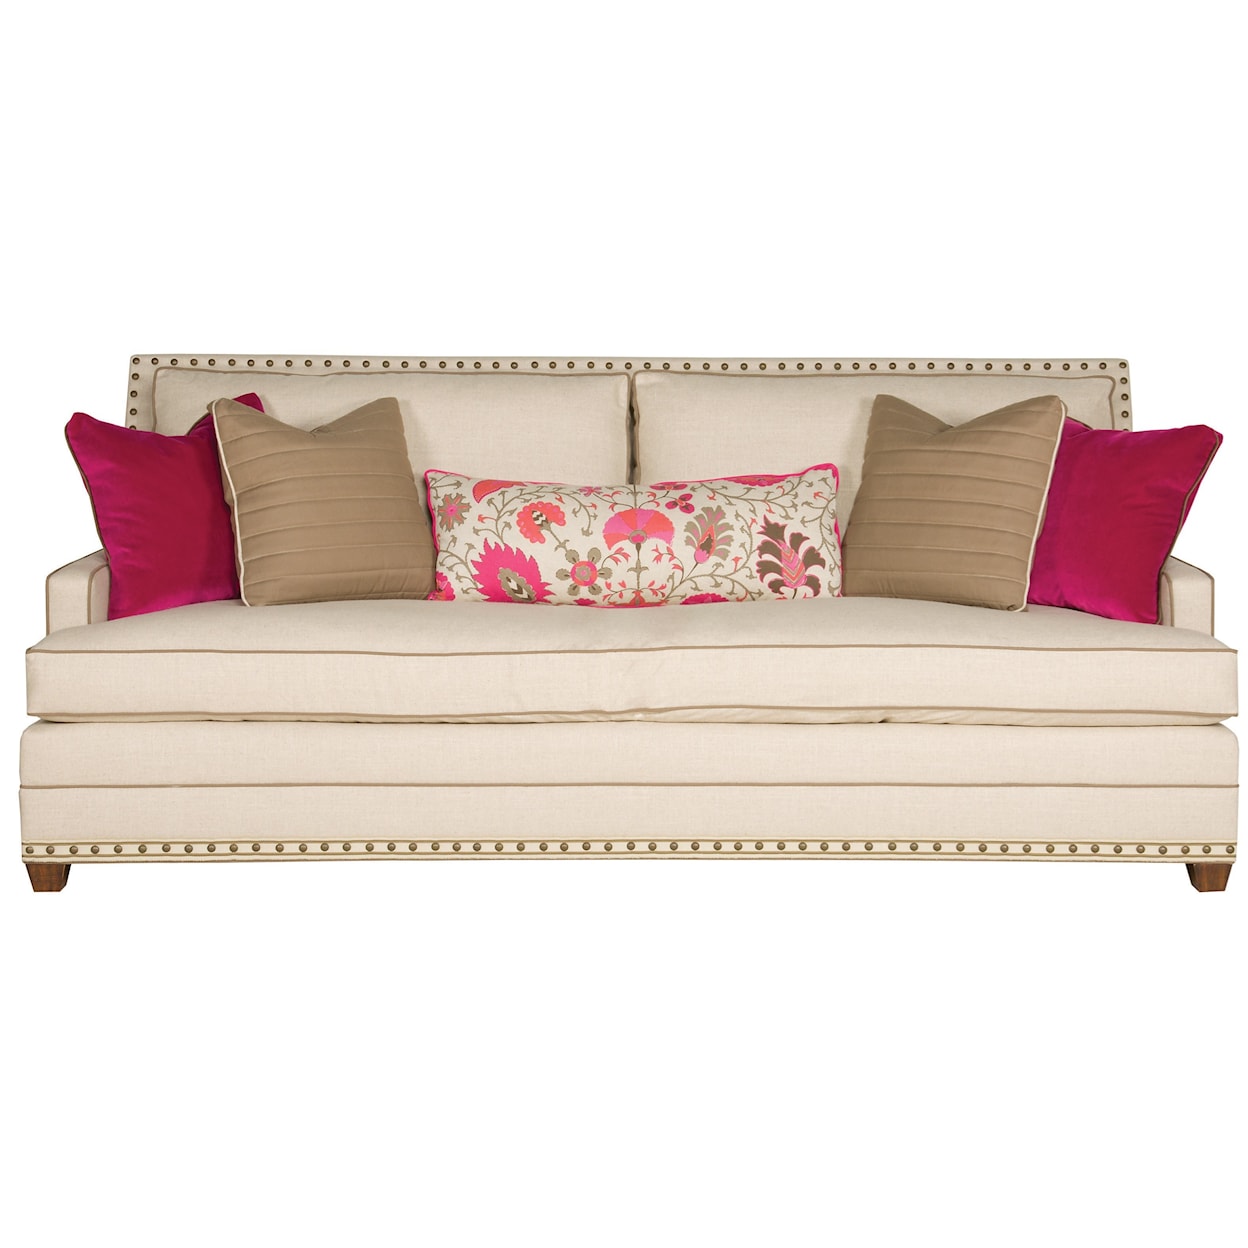 Vanguard Furniture American Bungalow Riverside Sofa